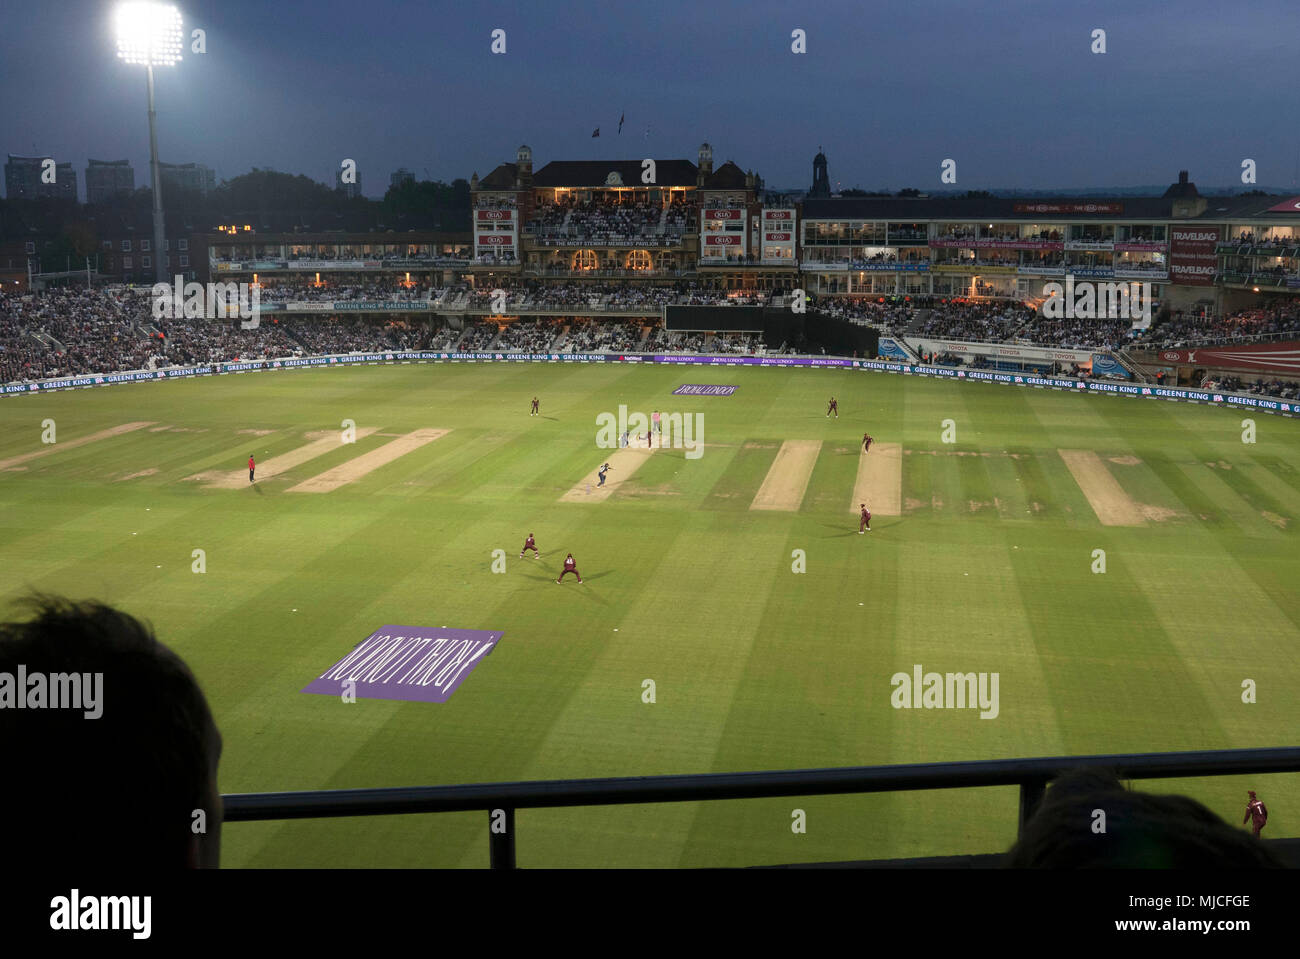 Angleterre jouer limited overs match v Antilles ,jour nuit au match de cricket au Oval en 2017 Banque D'Images